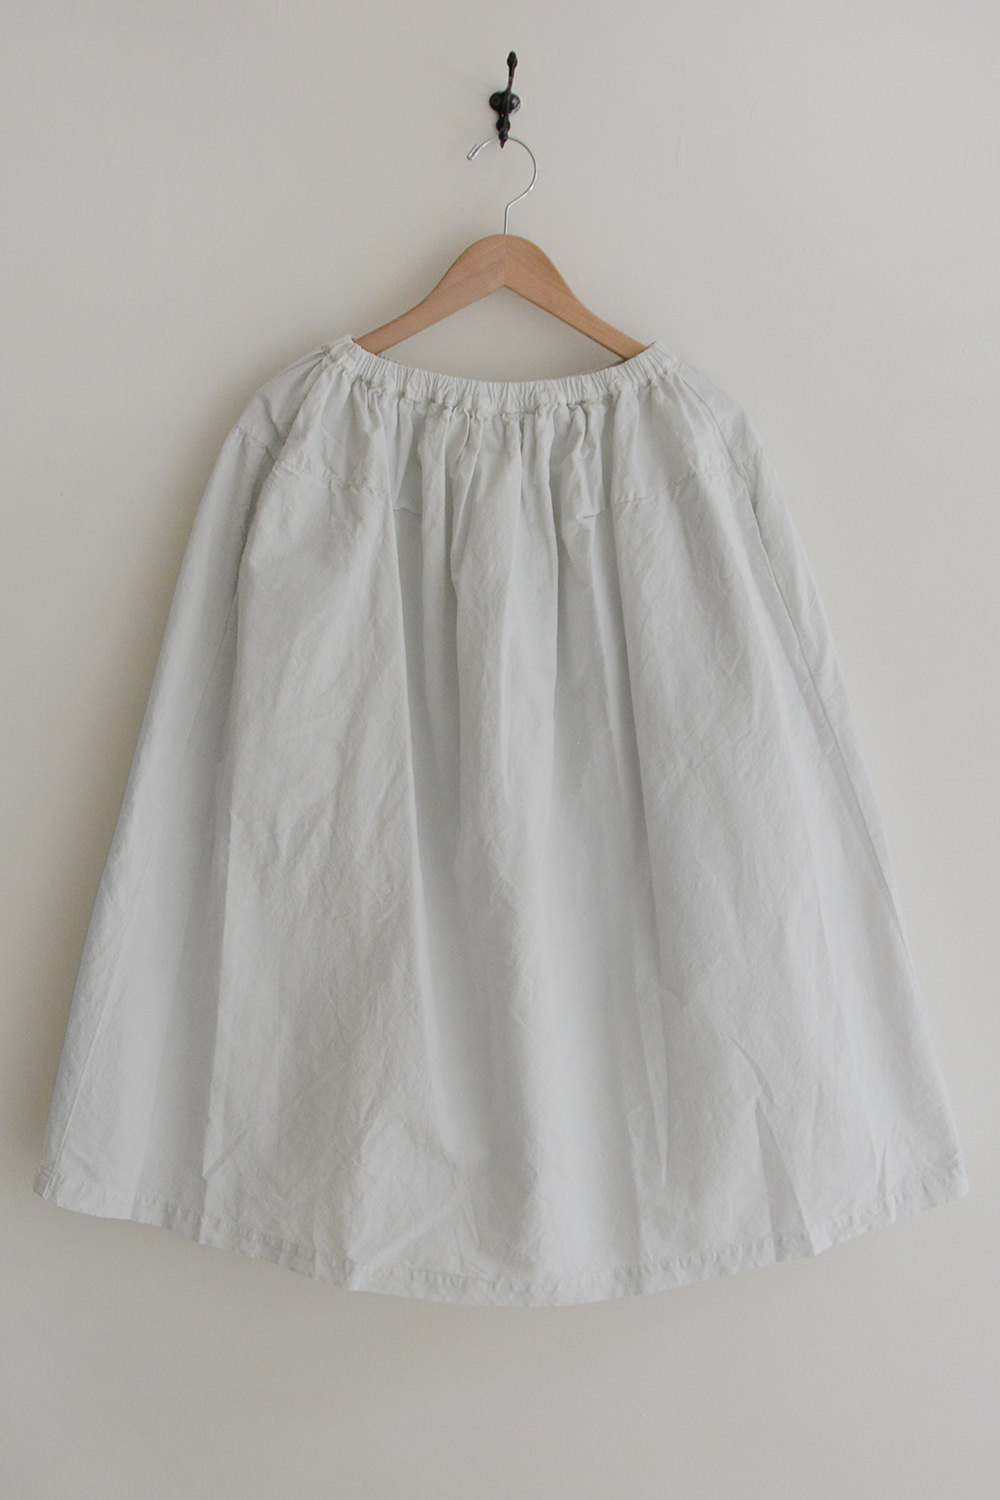 Manuelle Guibal, Linen Cotton Skirt in Ash White Top